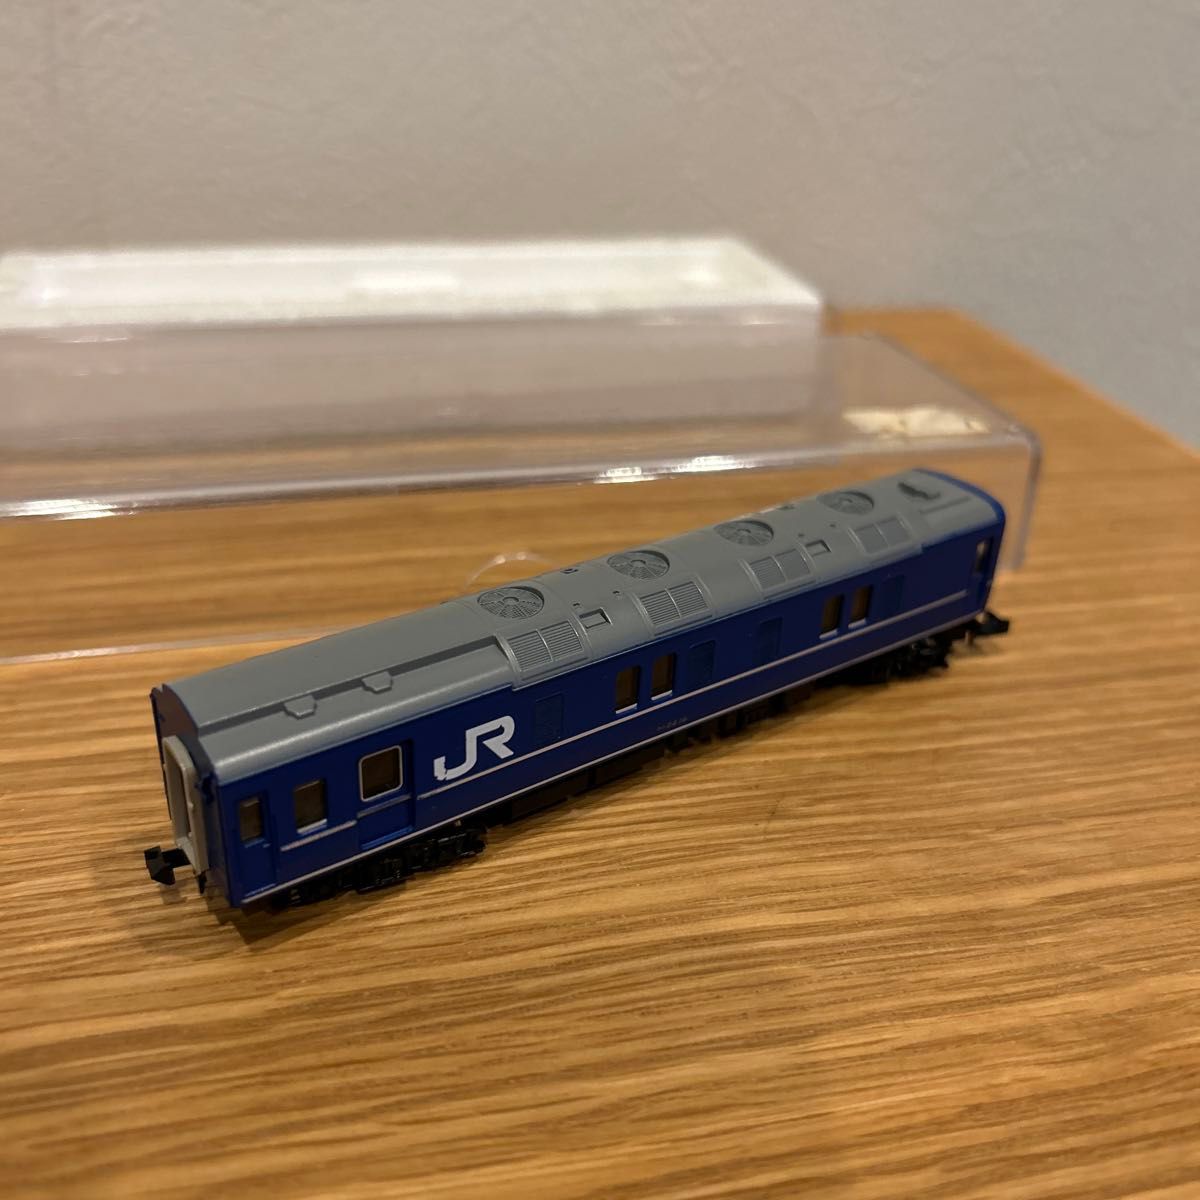 KATO カニ24 511 JR 鉄道模型 Nゲージ